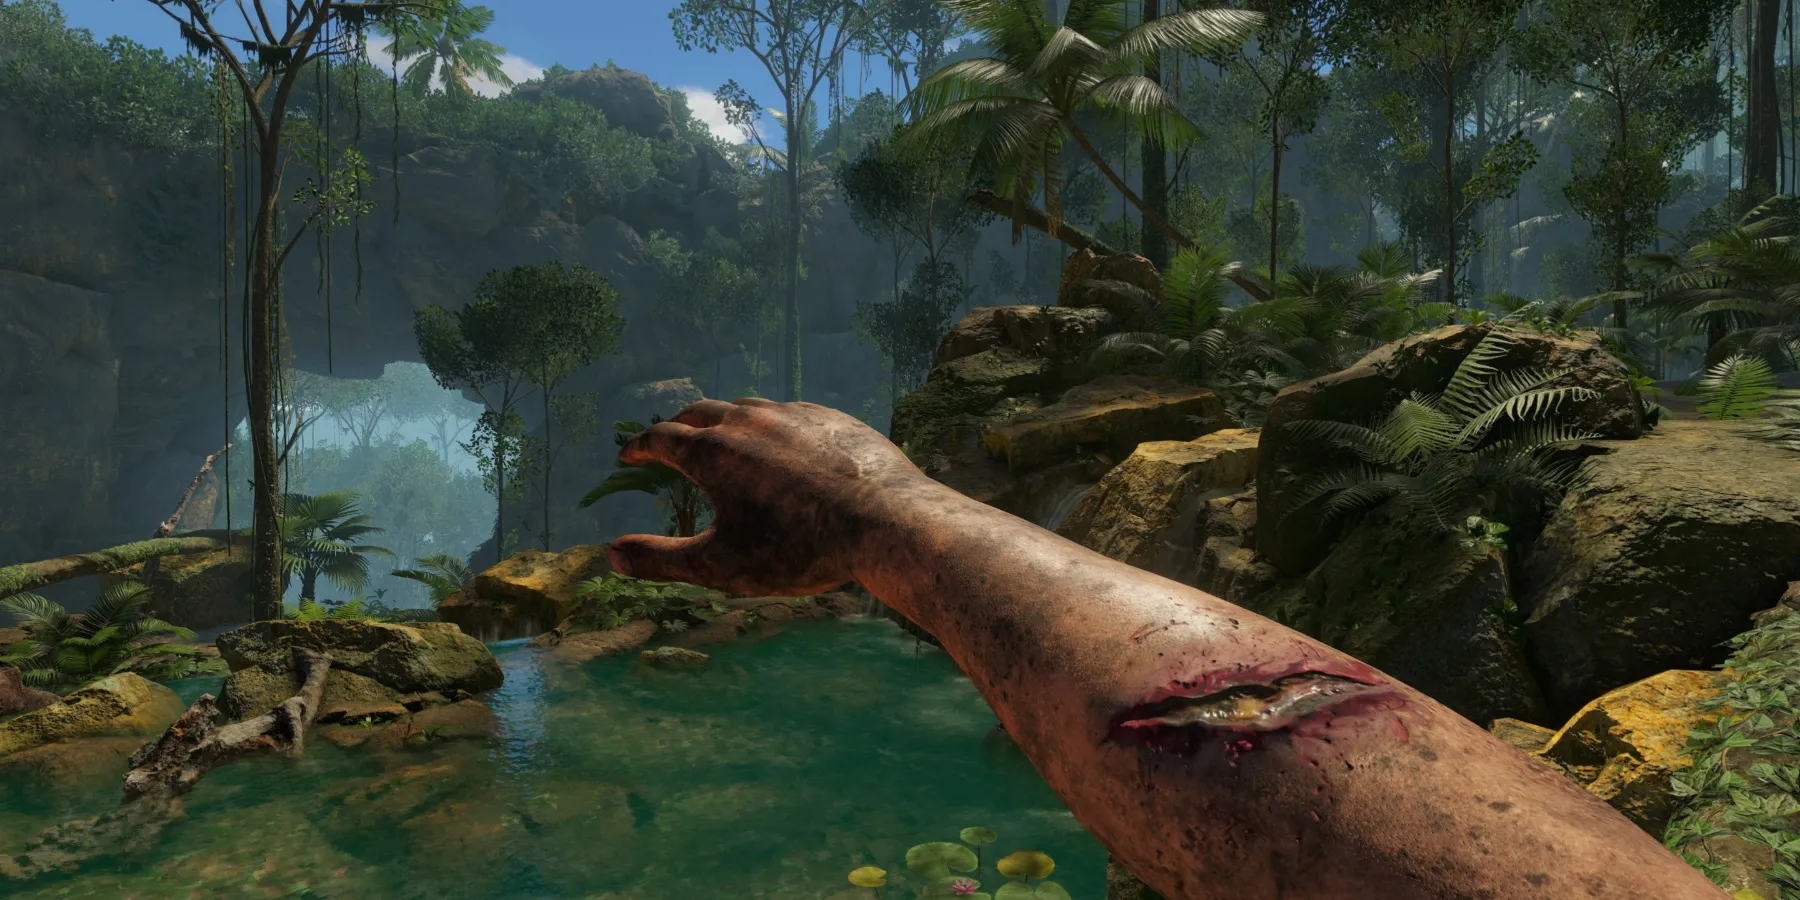 Le bras du joueur, avec une entaille, s'étendant au-dessus d'un lac dans la forêt tropicale de Green Hell